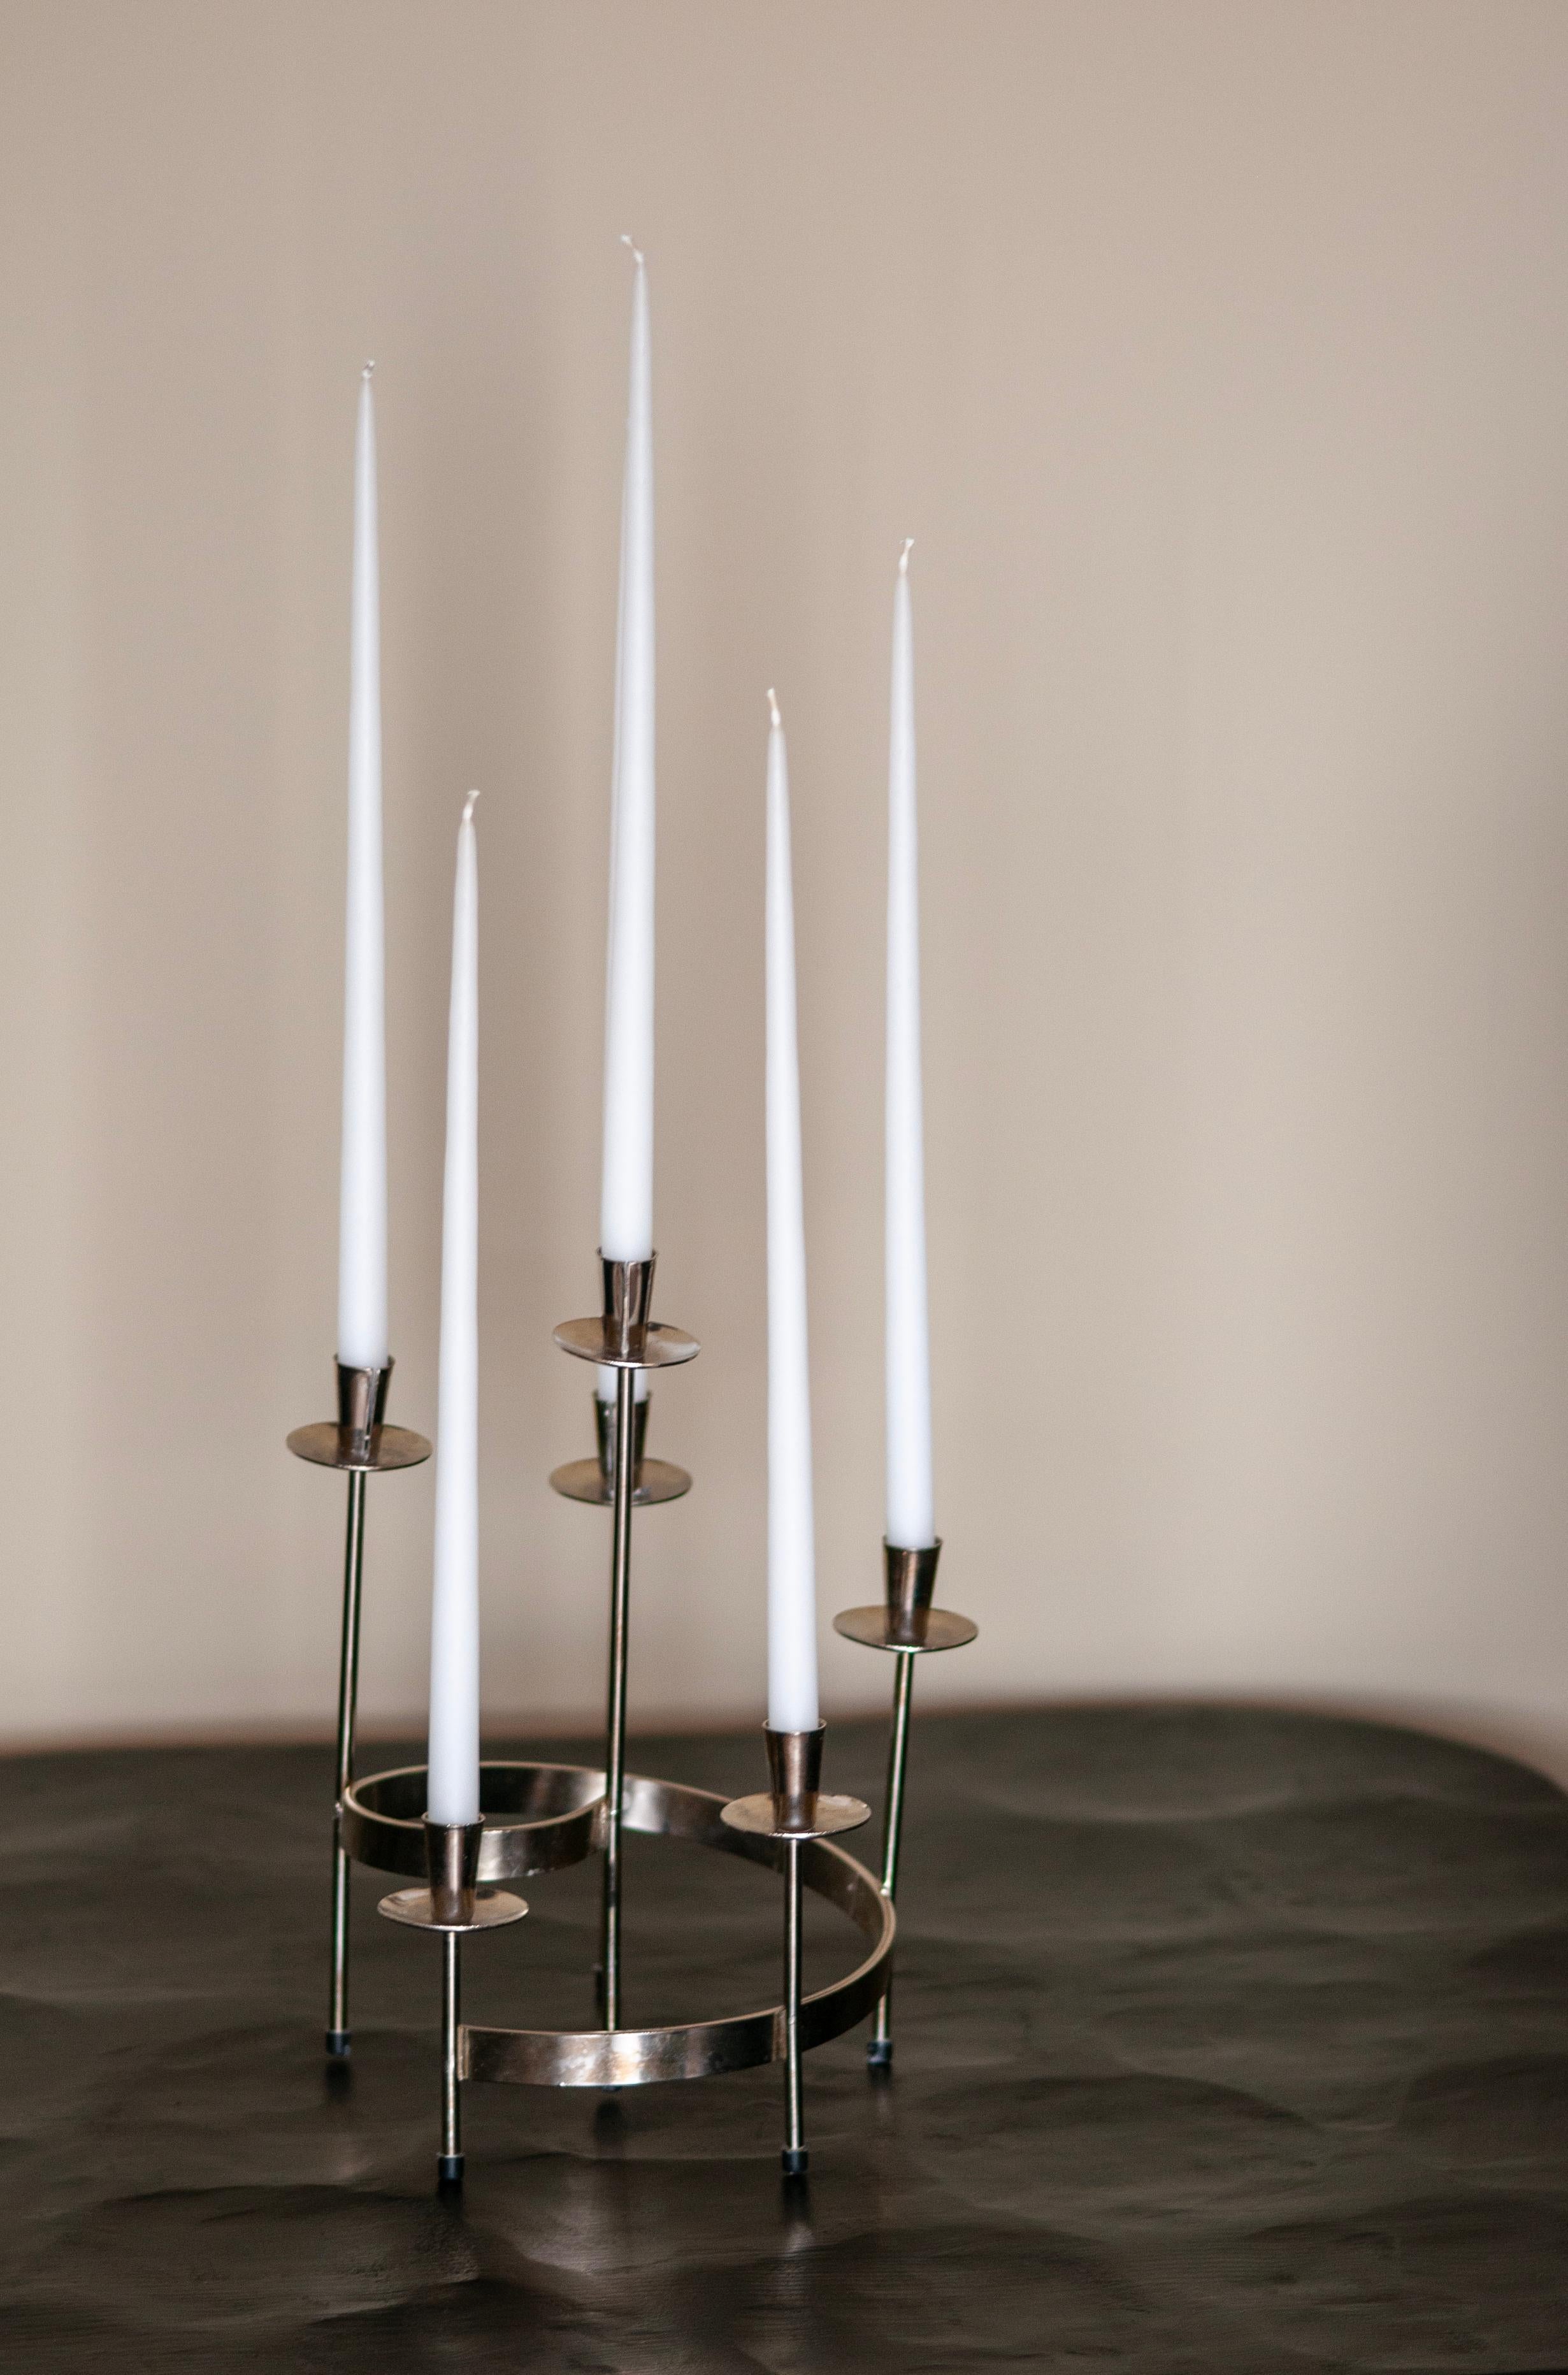 Wir präsentieren einen entzückenden runden schwedischen Kerzenständer im Vintage-Stil aus der Mitte des Jahrhunderts, der in exquisiter Handarbeit aus weißem Metall gefertigt wurde. Dieses elegante Stück wurde von dem renommierten Designer Gunnar